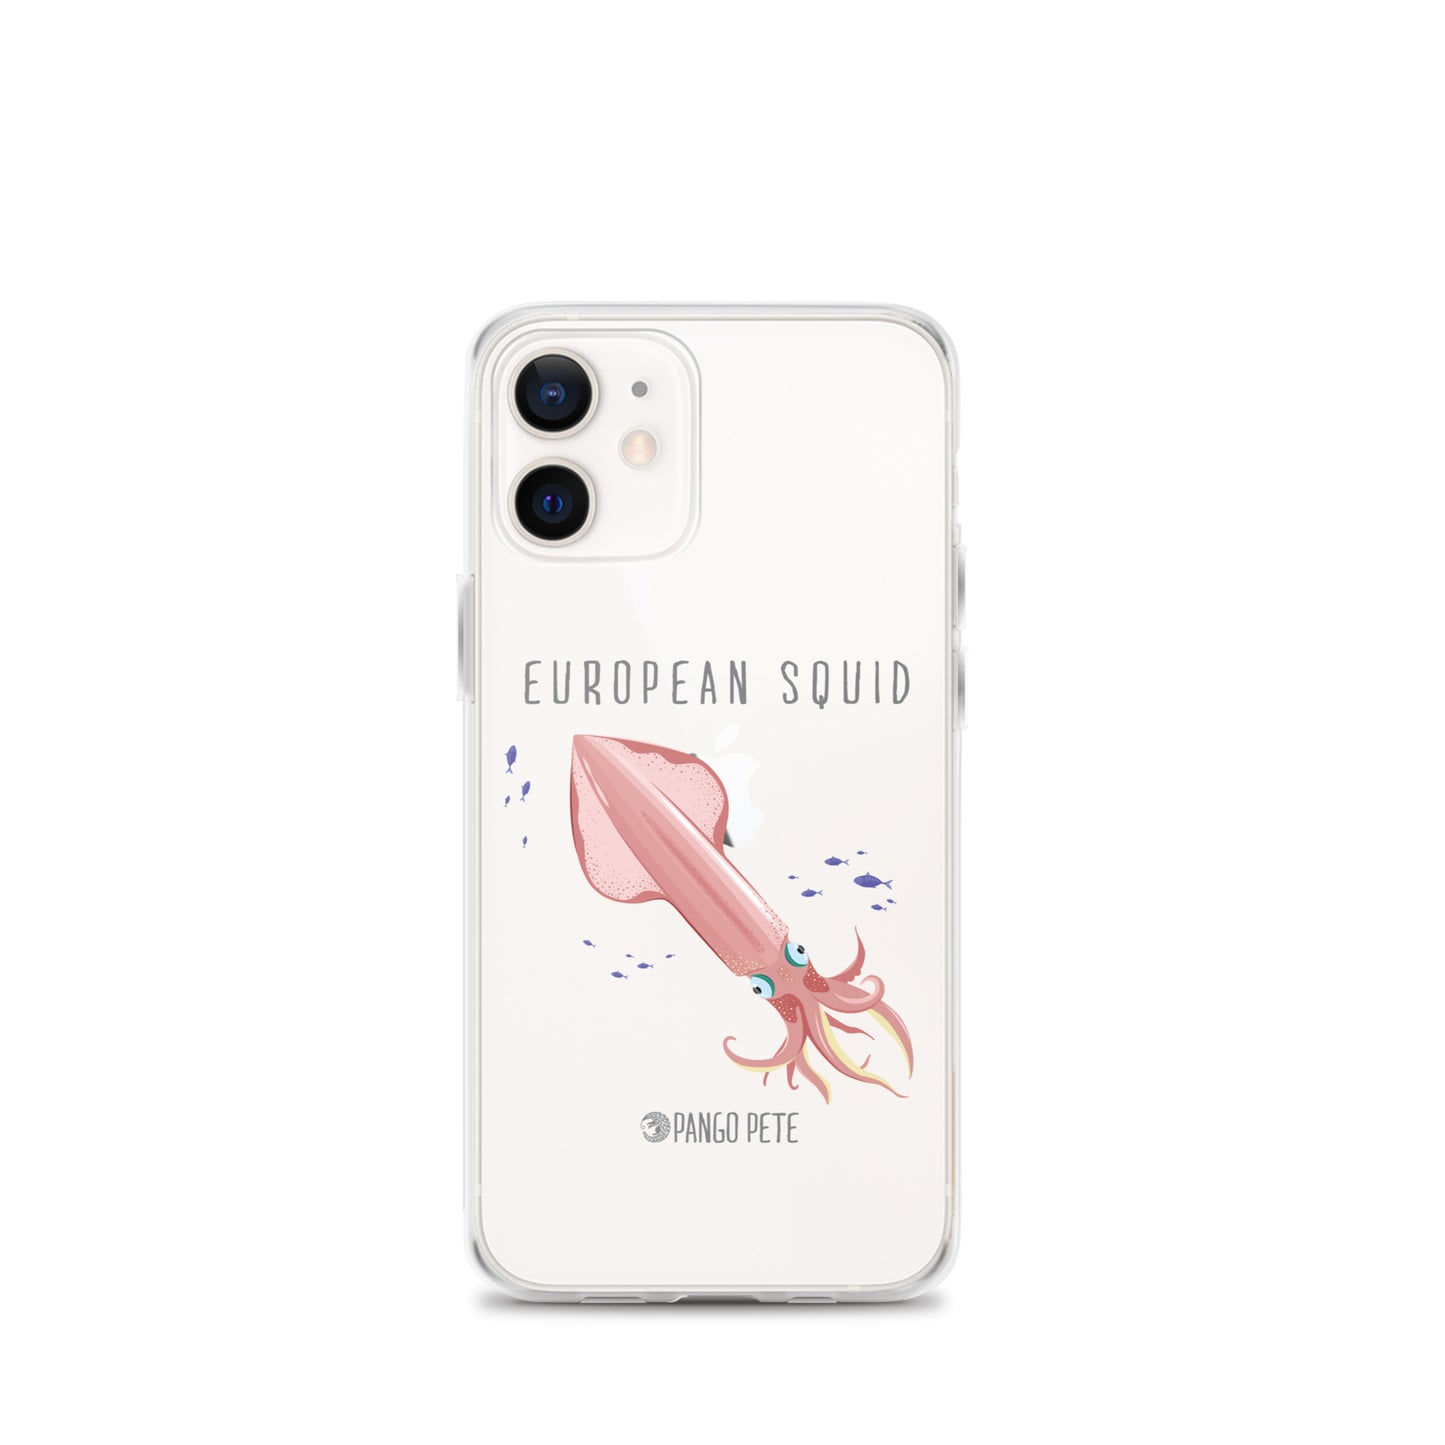 European Squid iPhone Case